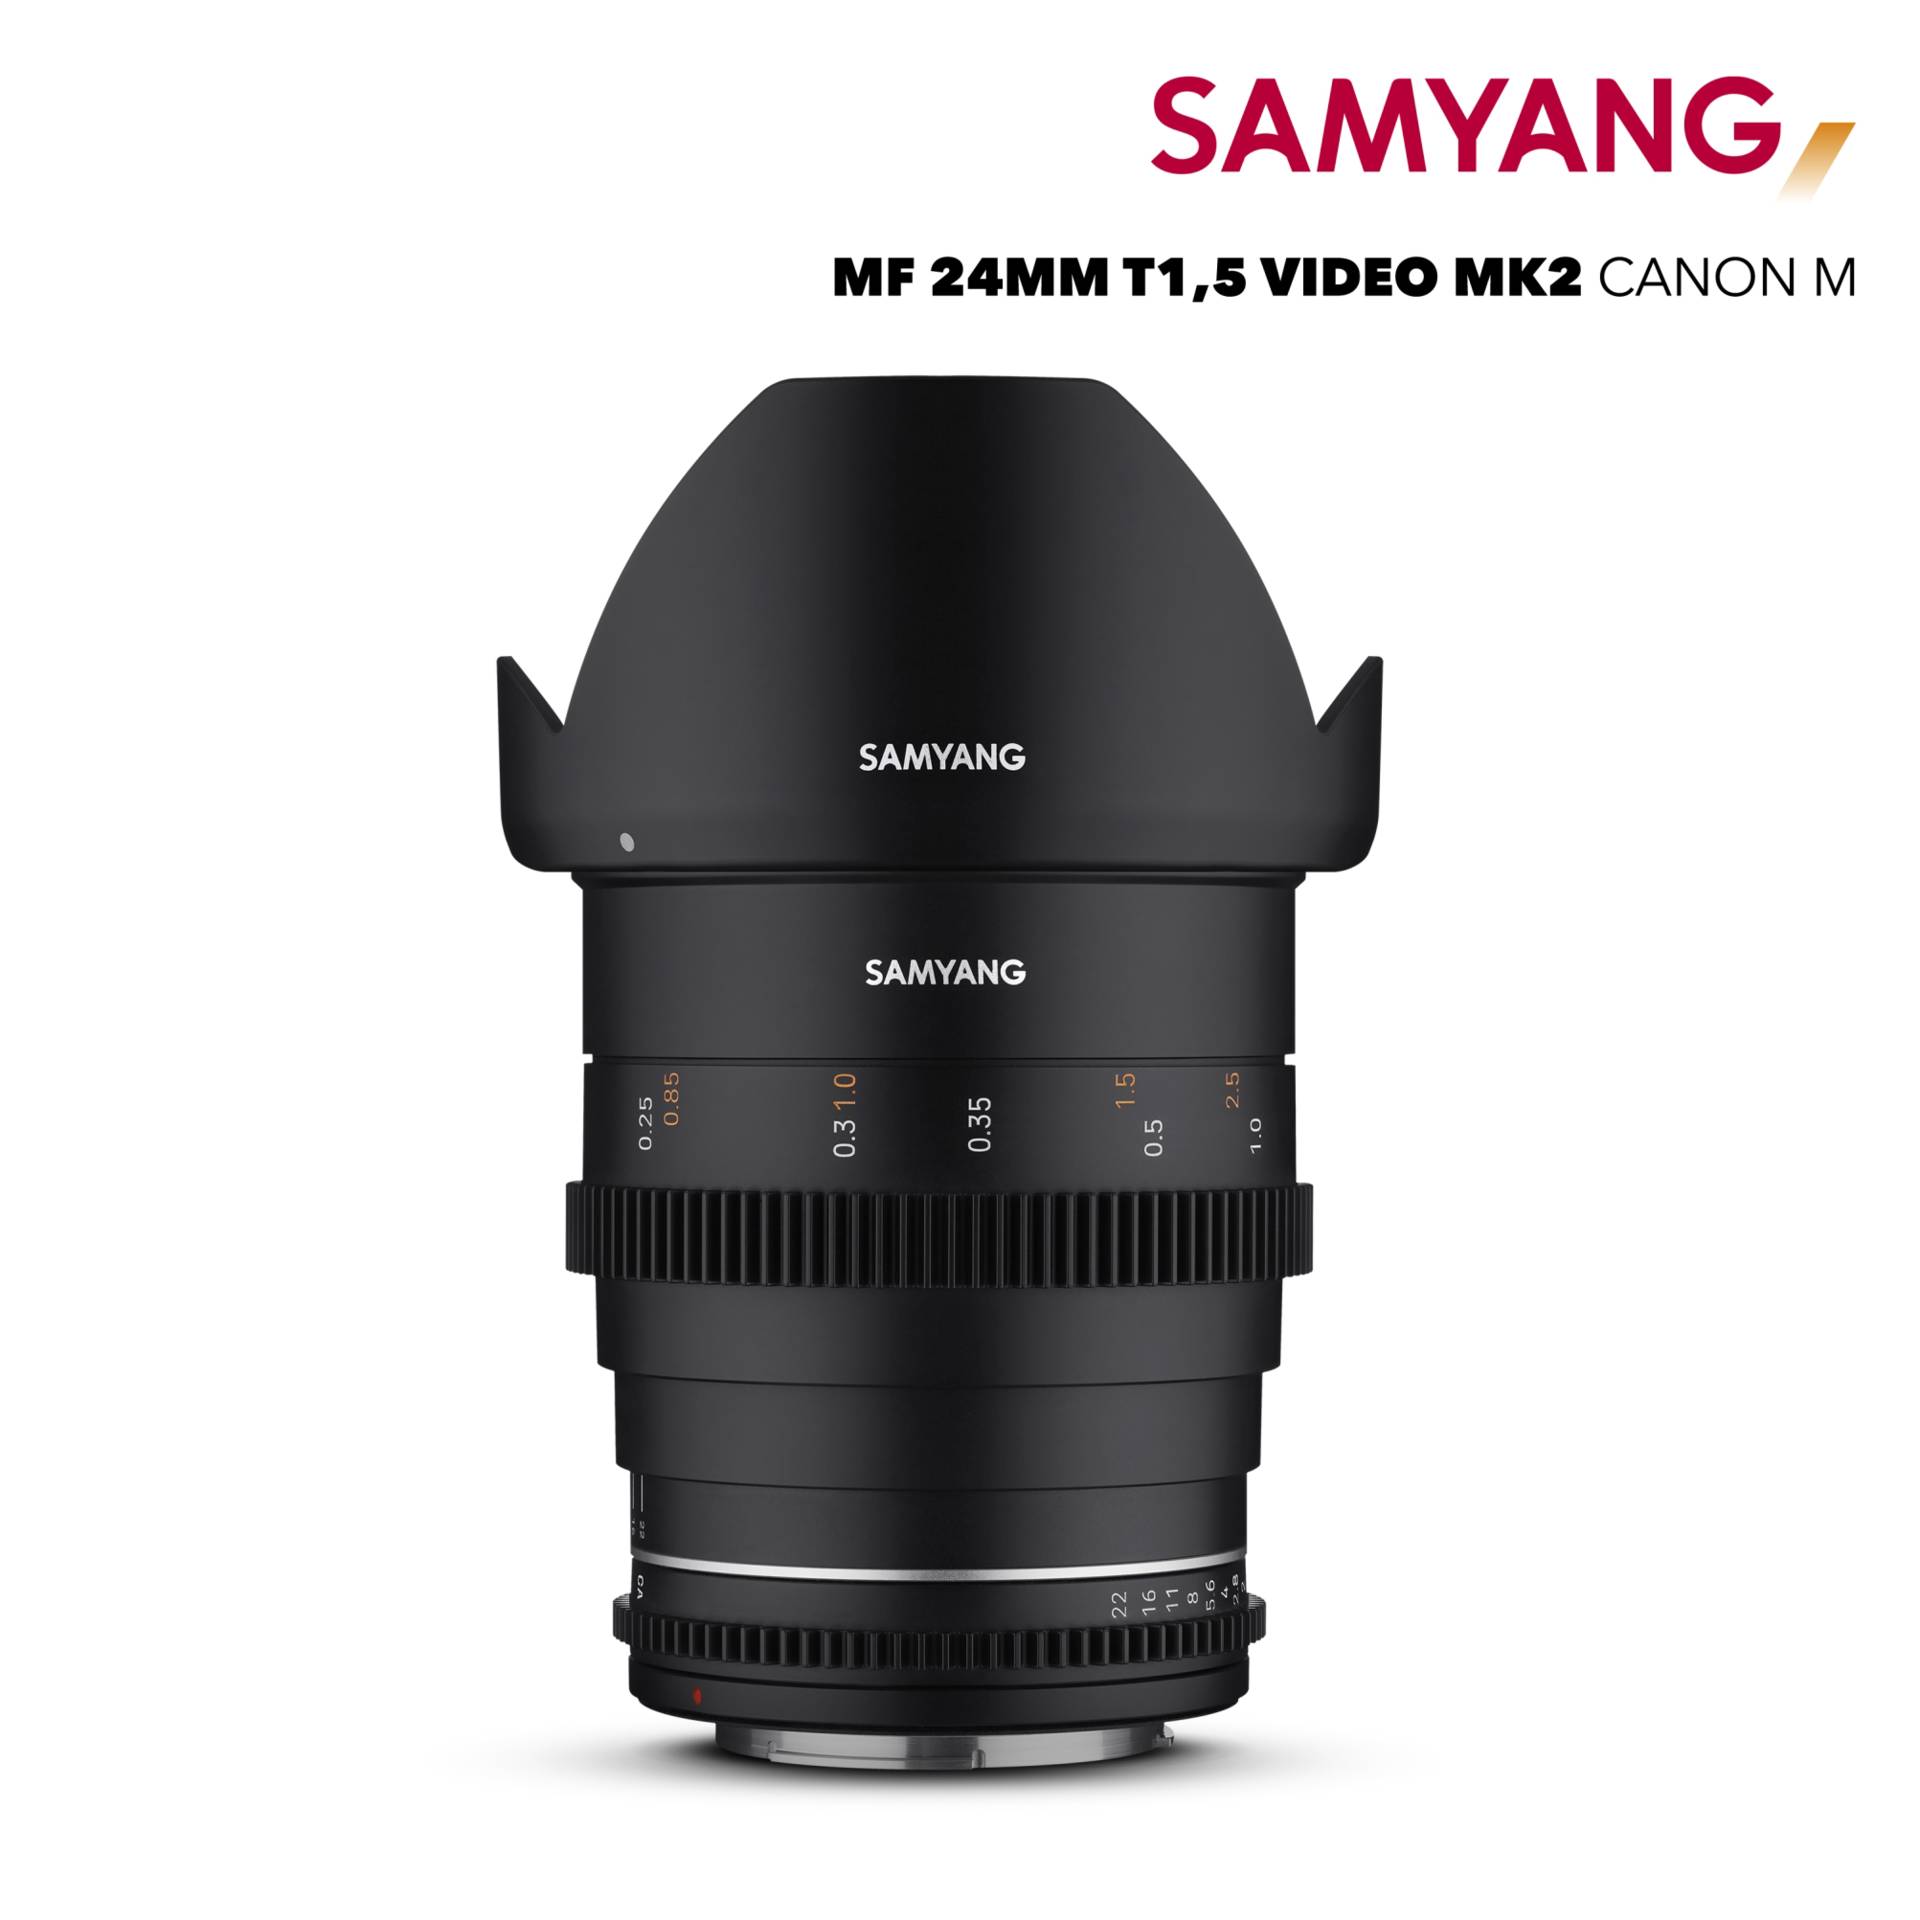 Samyang MF 24mm T1,5 VDSLR MK2 Canon M